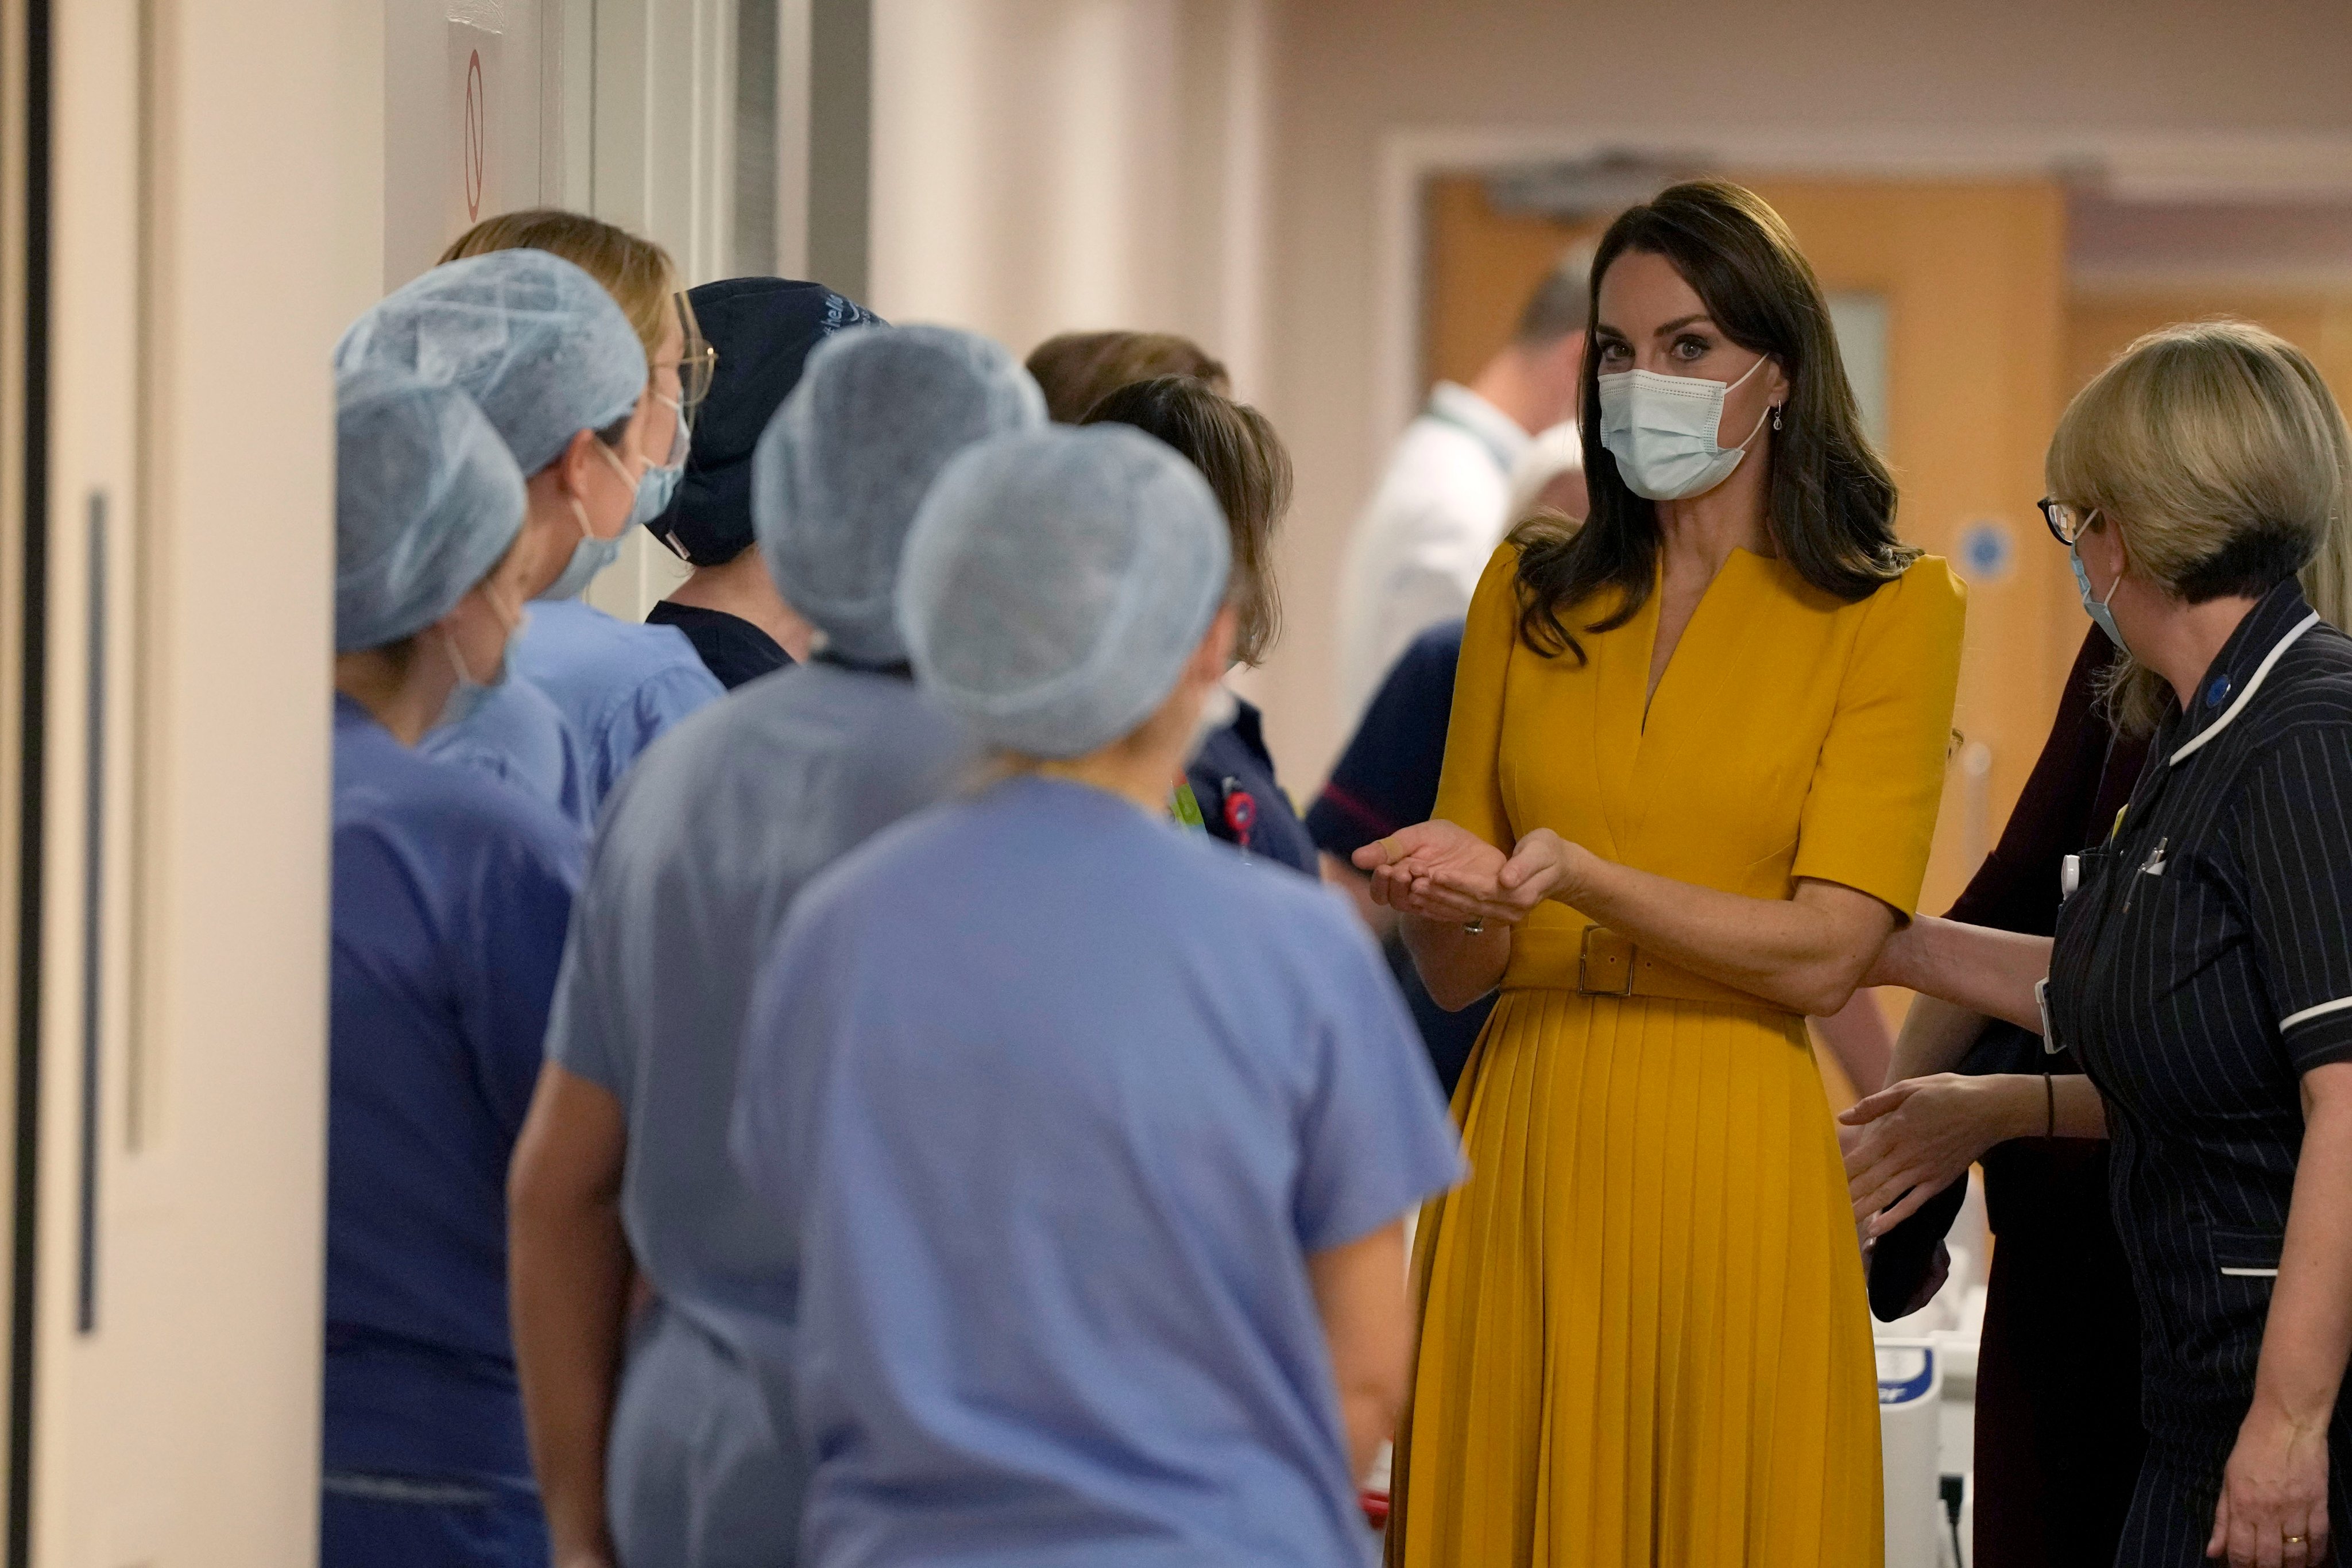 Кейт Миддлтон в желтом наряде побывала в Королевской больнице Гилфорда